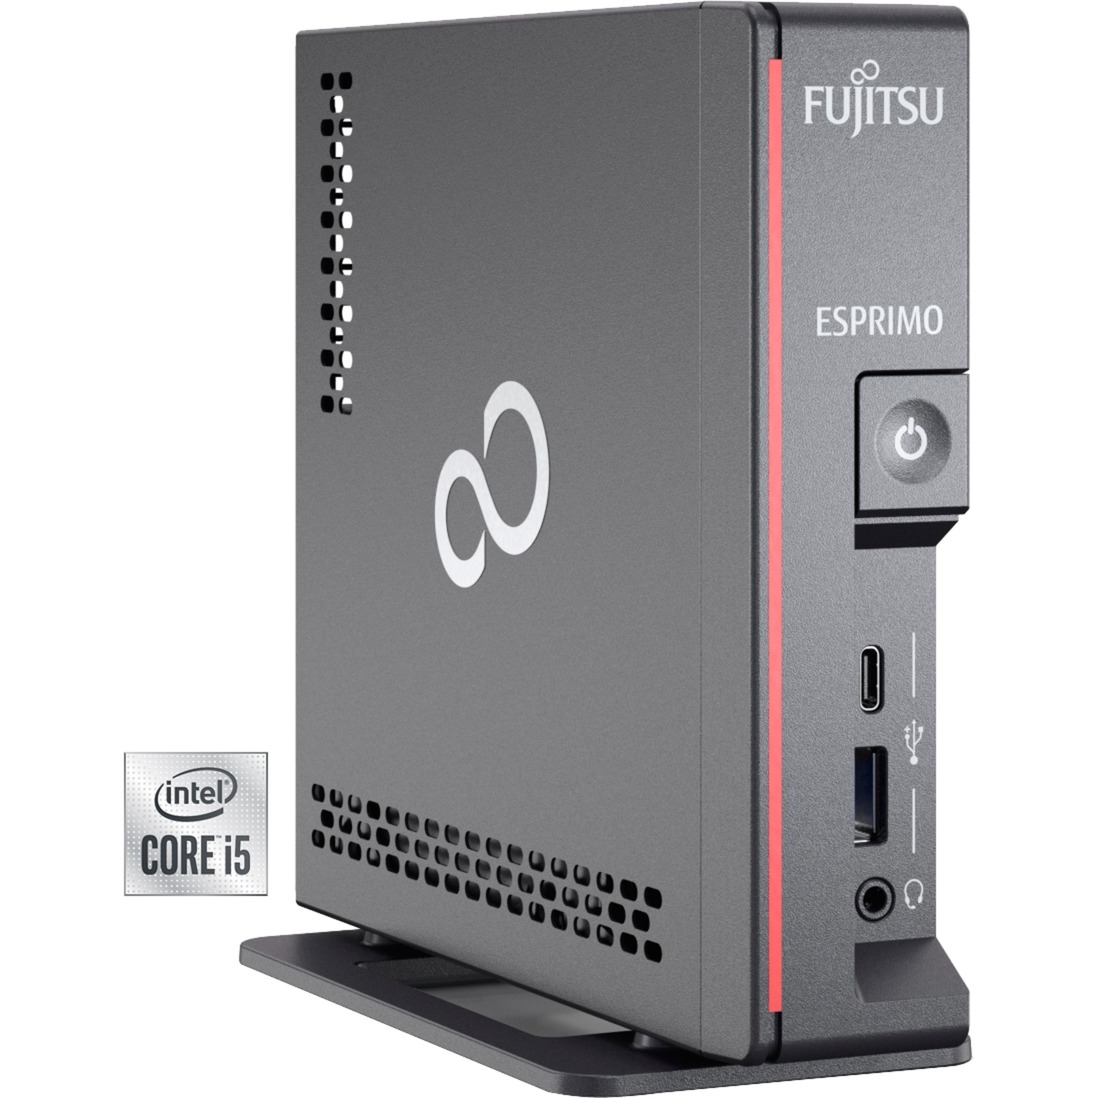 Image of Alternate - ESPRIMO G9010 (VFY:G9010P15AMIN), Mini-PC online einkaufen bei Alternate